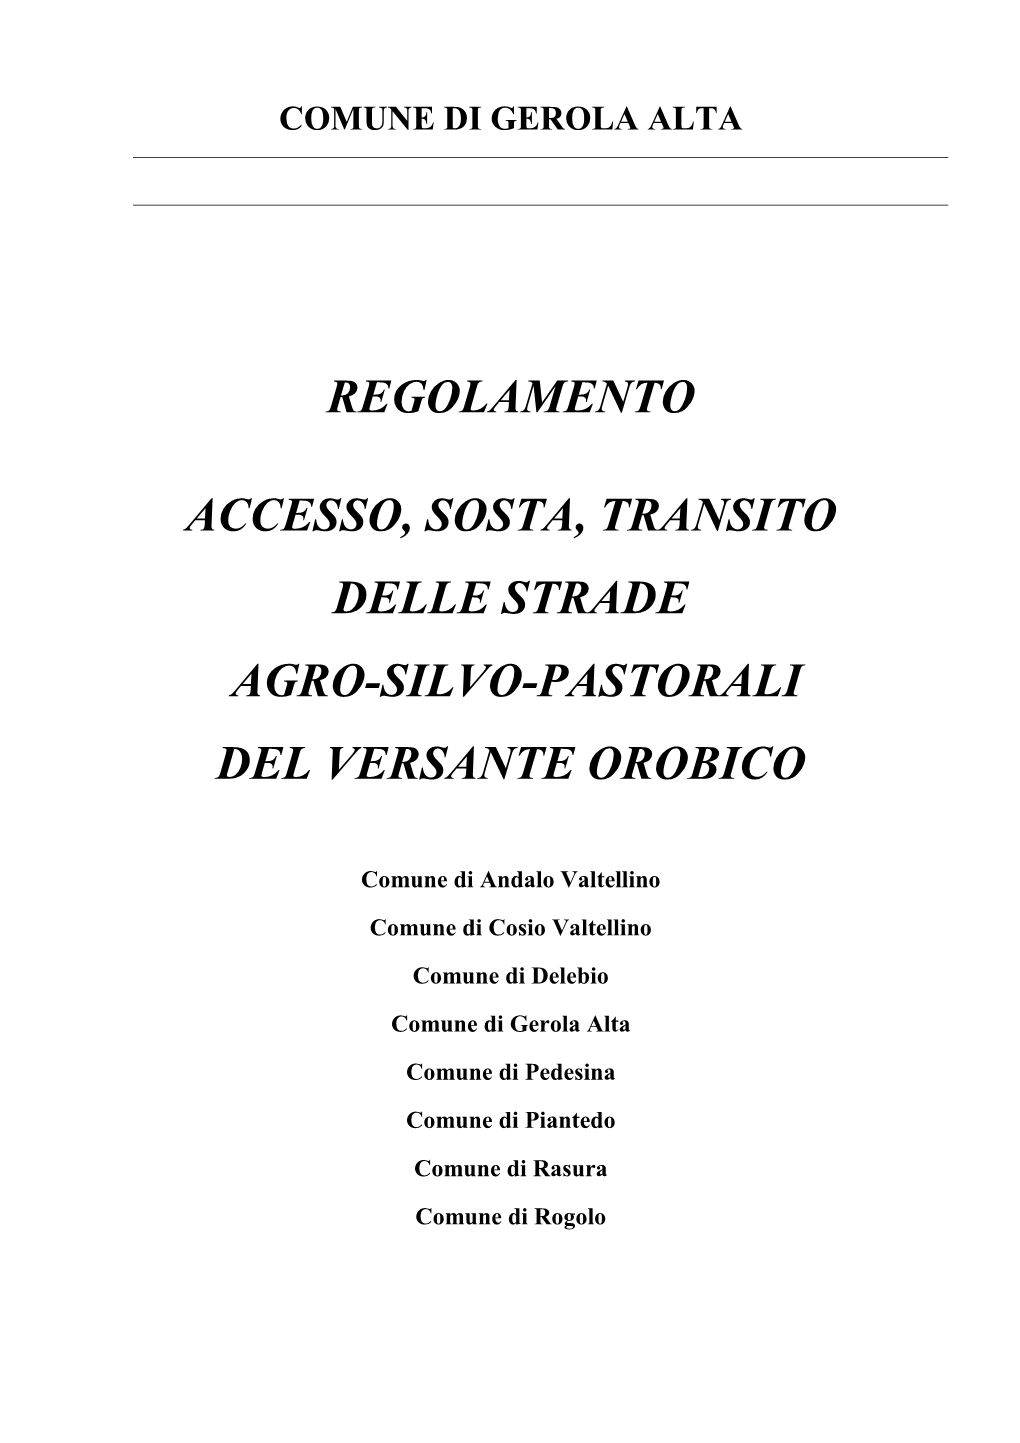 Regolamento Accesso, Sosta, Transito Delle Strade Agro-Silvo-Pastorali Del